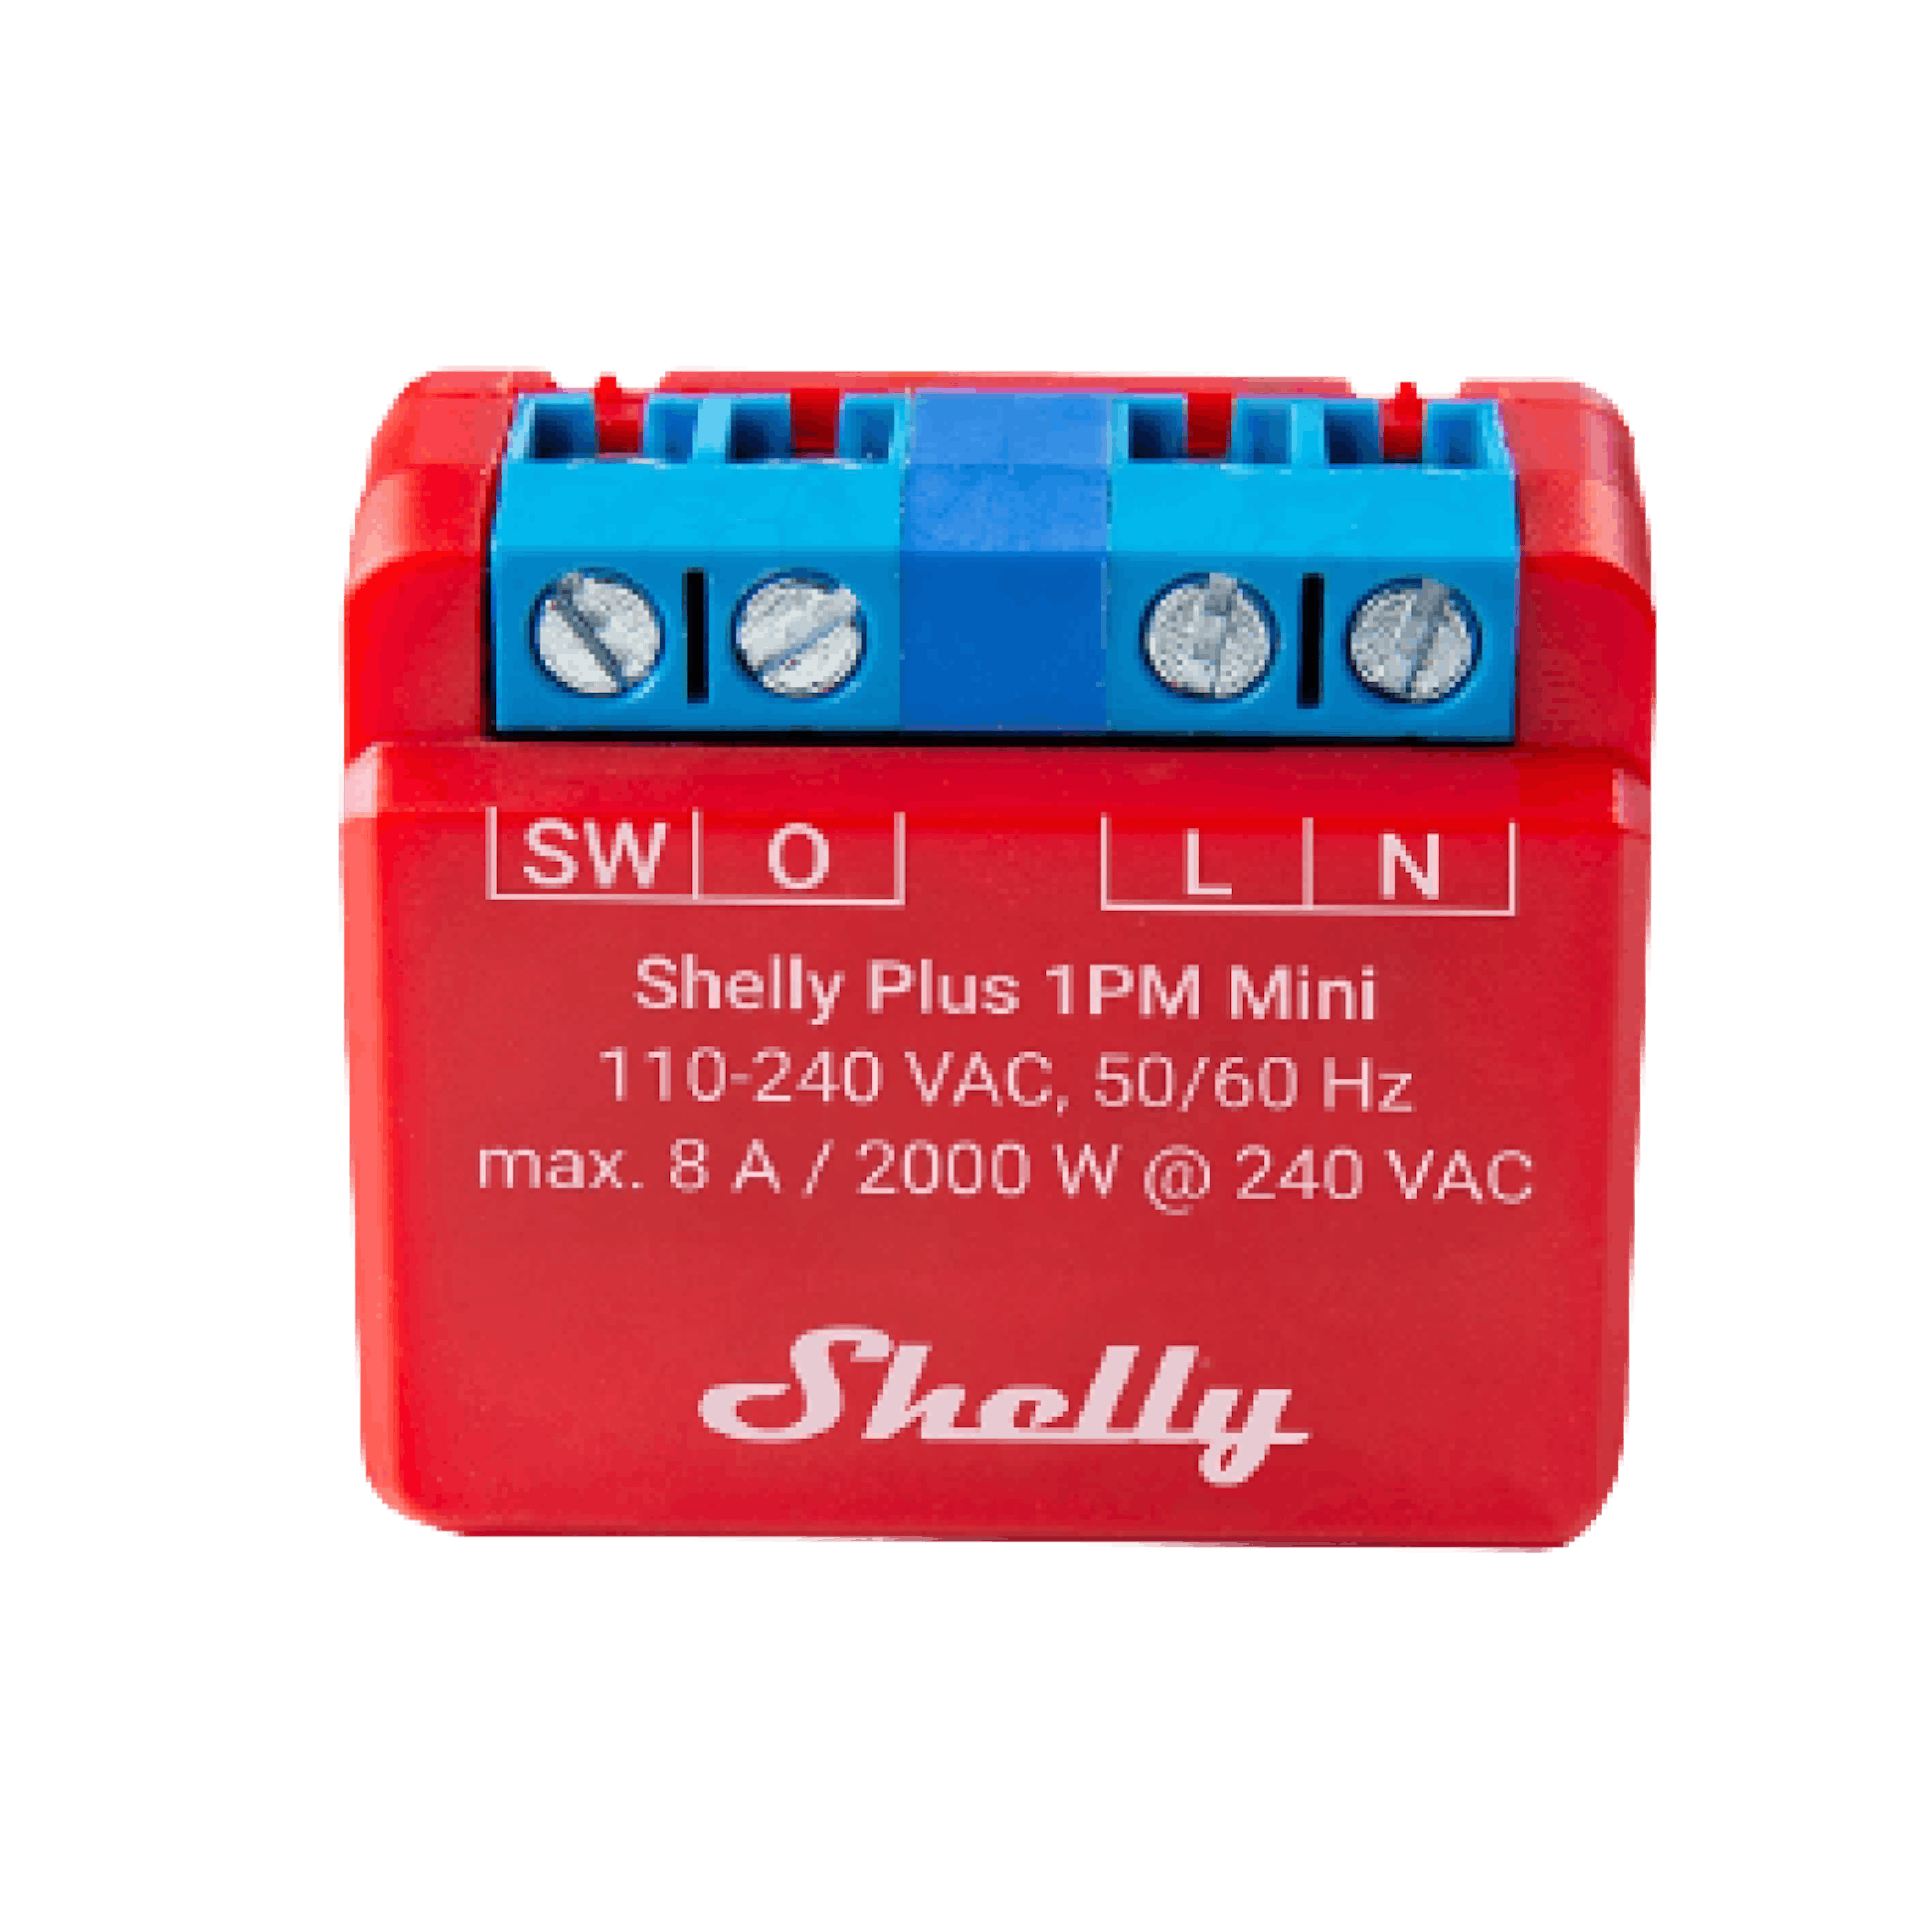 Shelly Plus 1PM Mini (Gen 3)